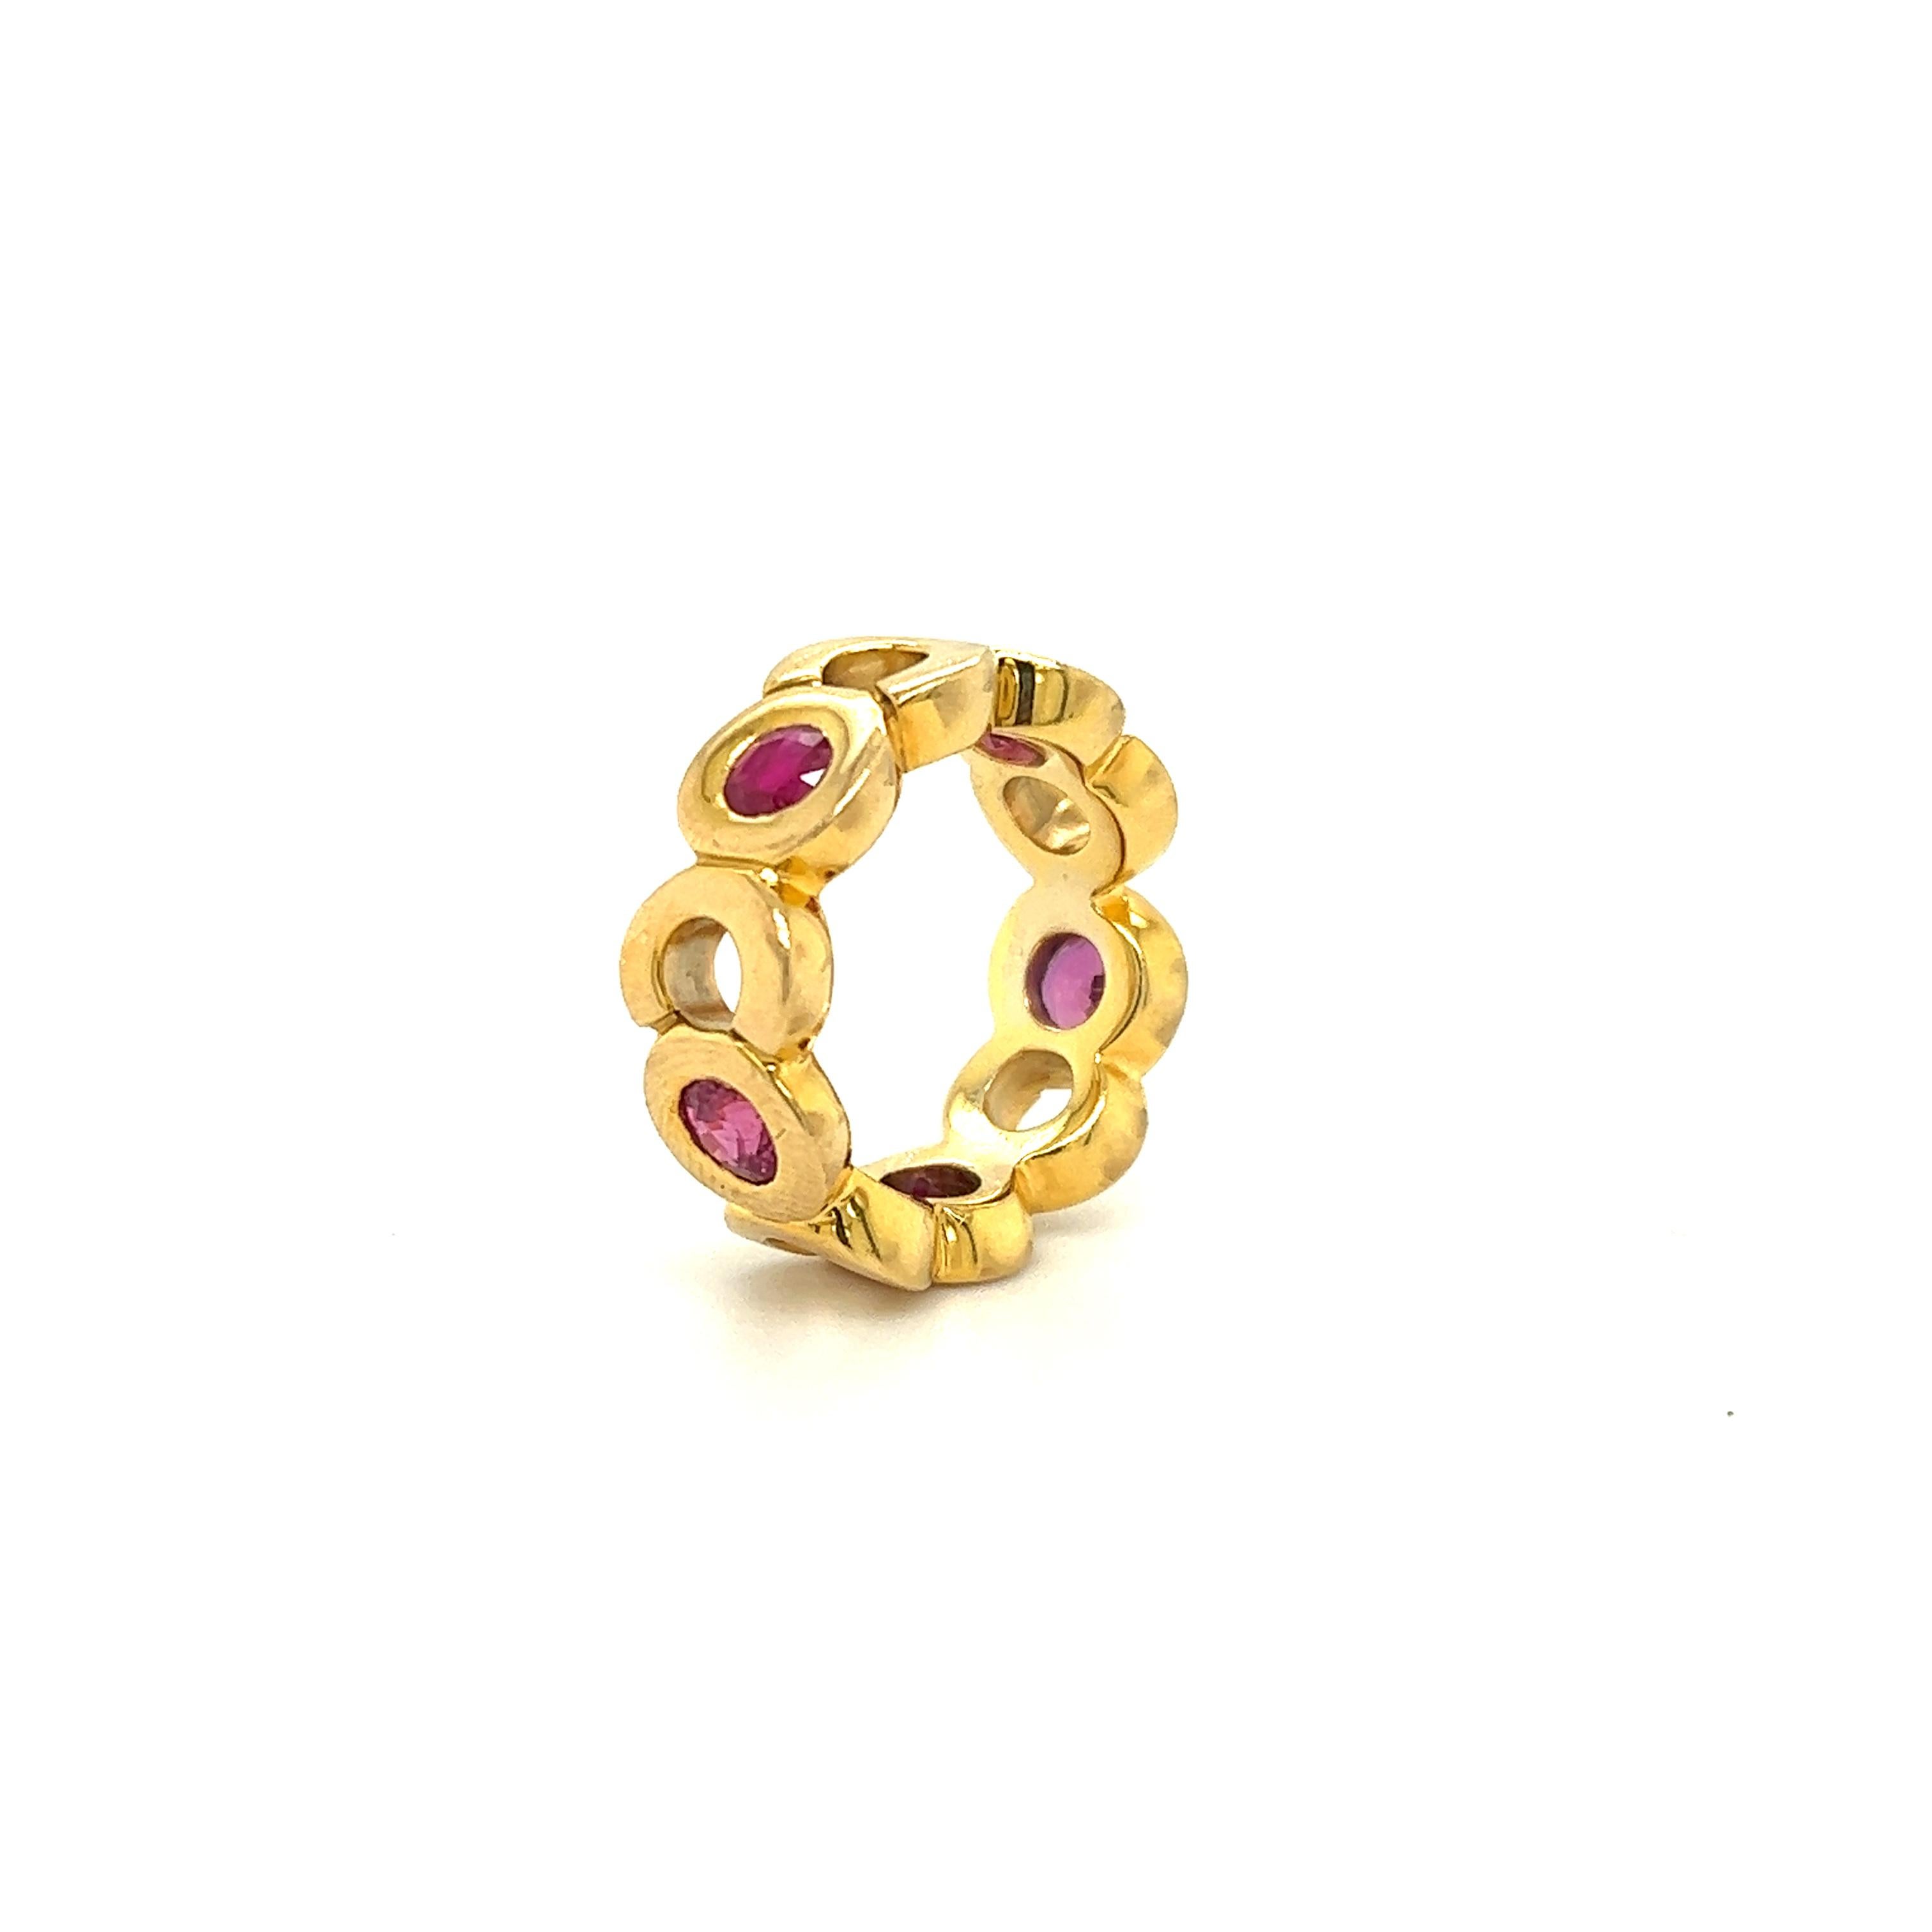 Schöner Ring aus dem berühmten Modehaus Chanel. Dieser elegante Ring ist aus 18 Karat Gelbgold gefertigt und trägt den Spitznamen 